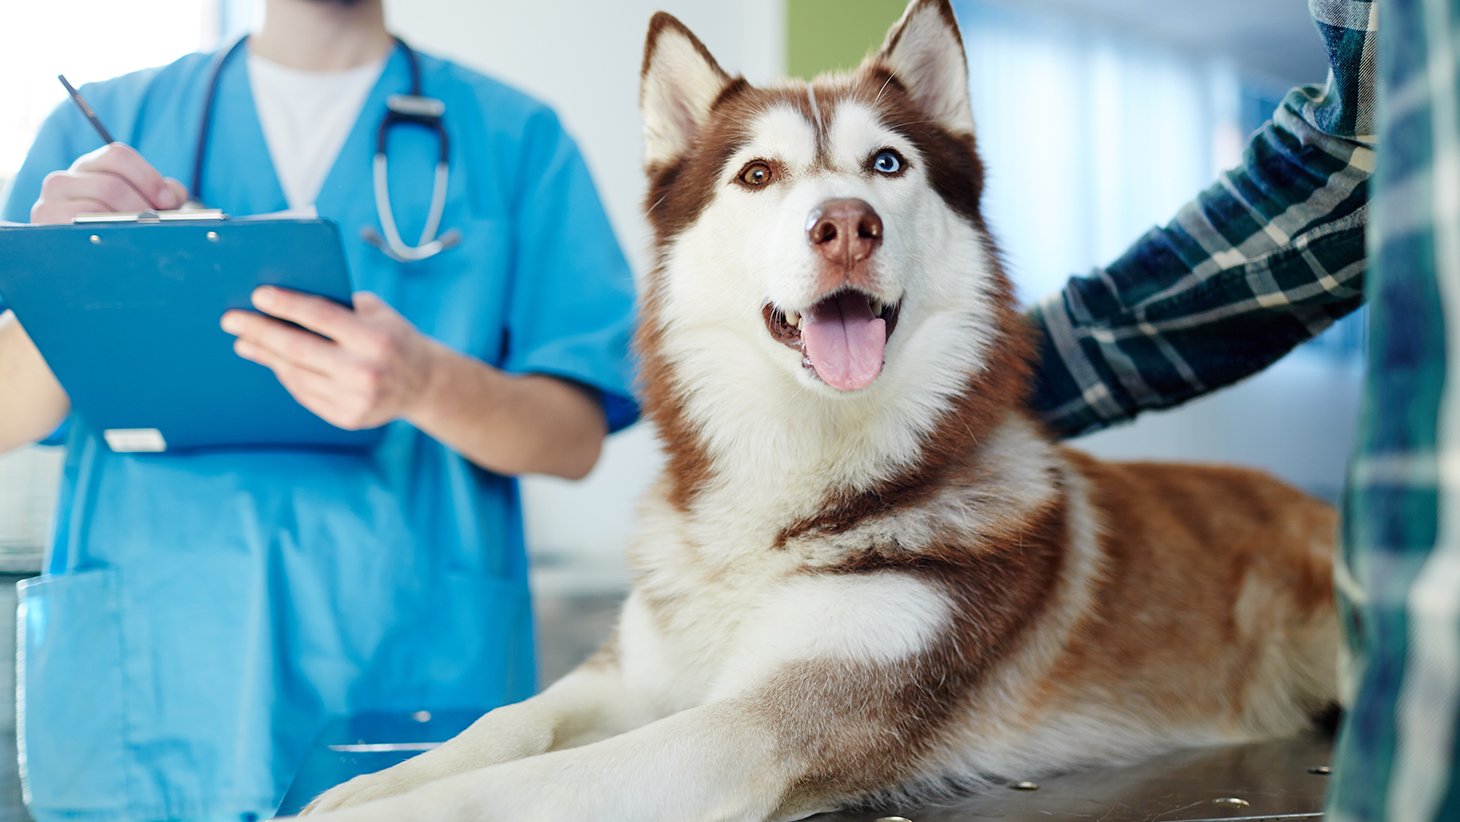 Ветеринарная клиника — врачи и курьеры